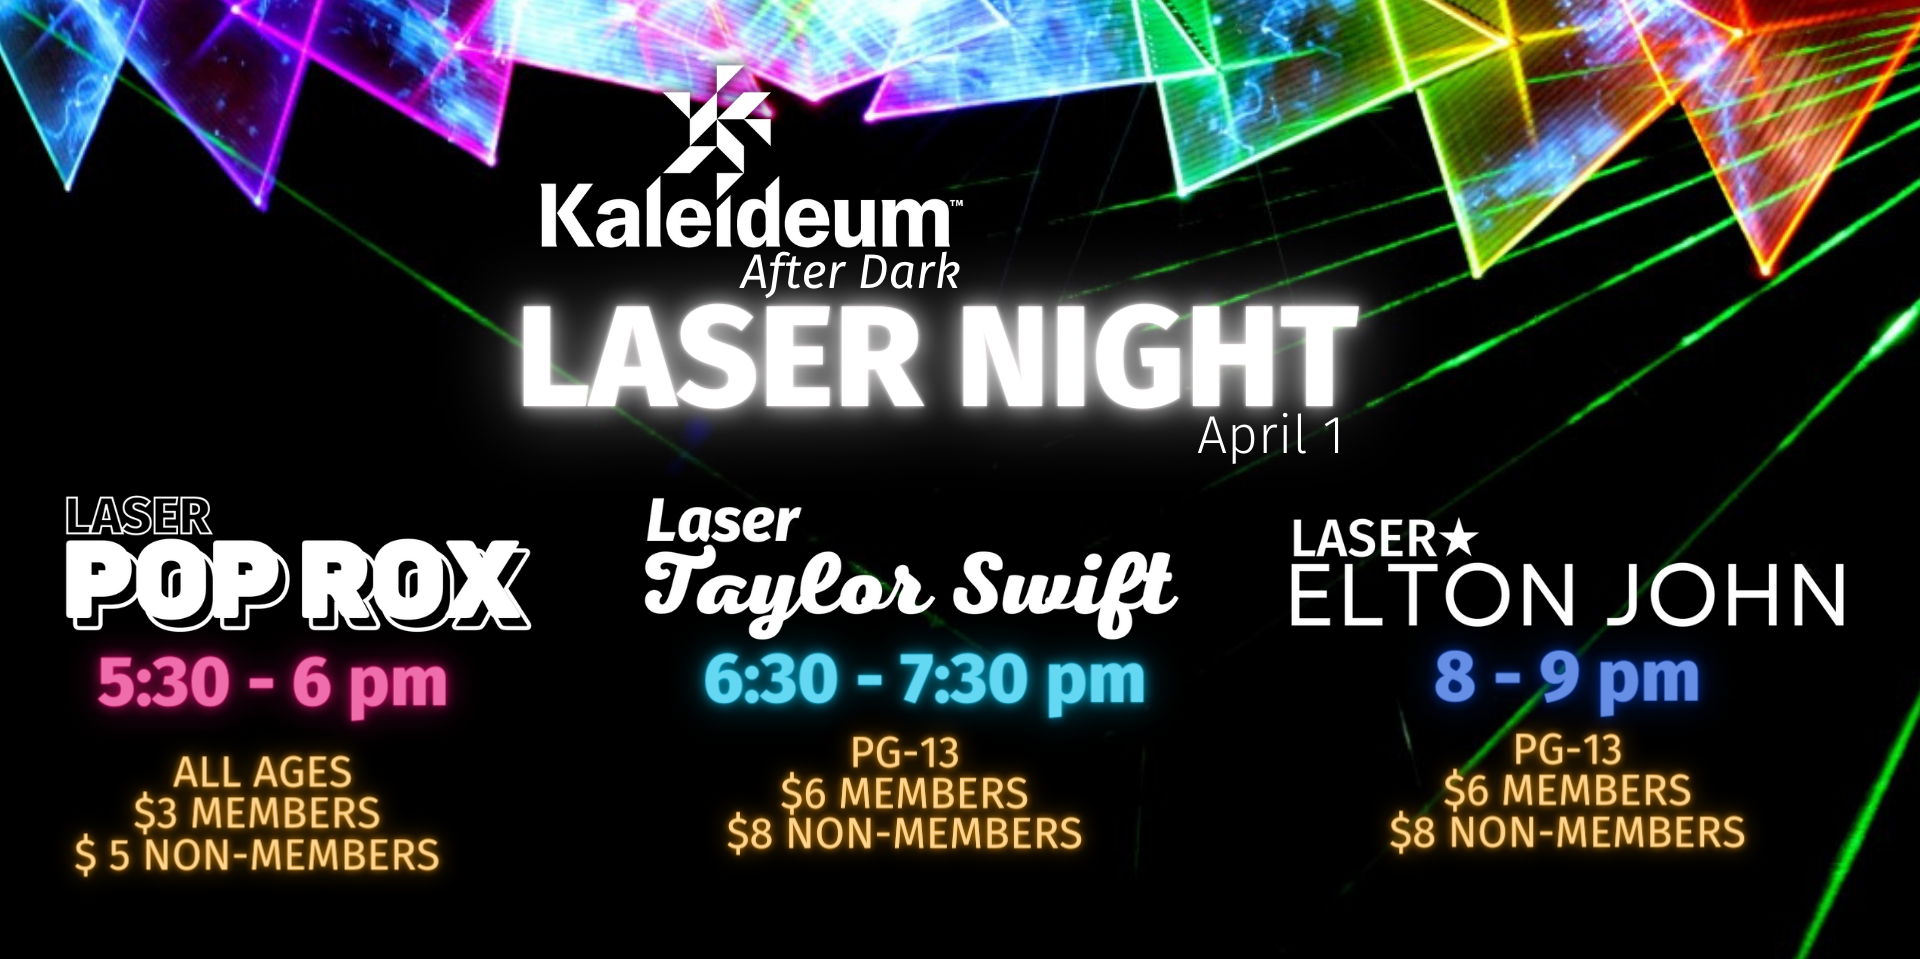 Kaleideum After Dark: Laser Night promotional image